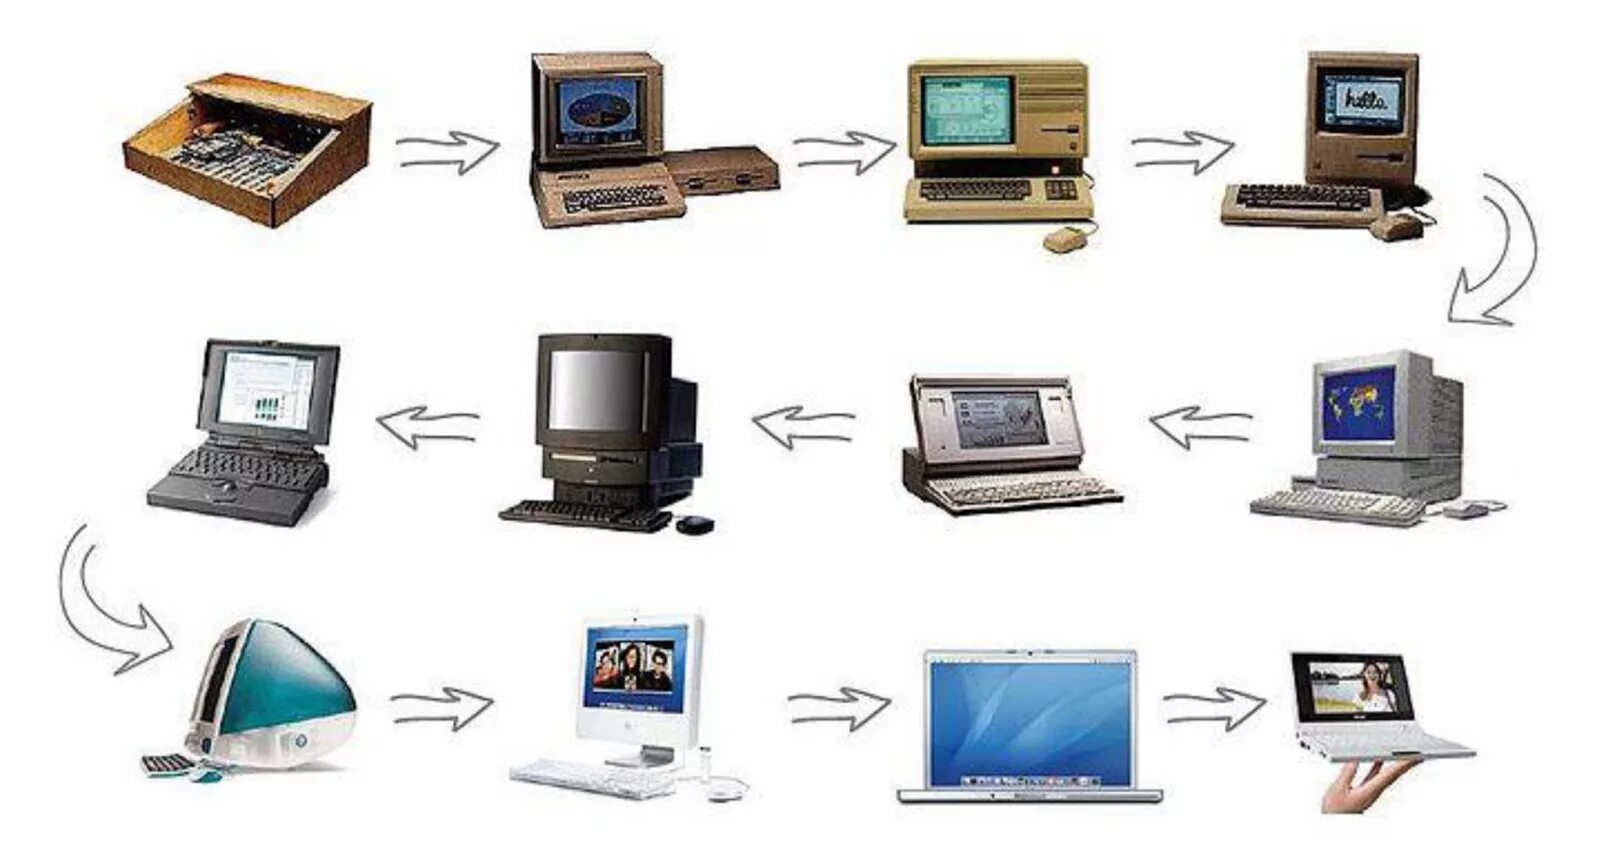 Как менялись компьютеры. Эволюция компьютеров. Эволюция персональных компьютеров. Развитие компьютеров. Эволюция компьютеров в картинках.